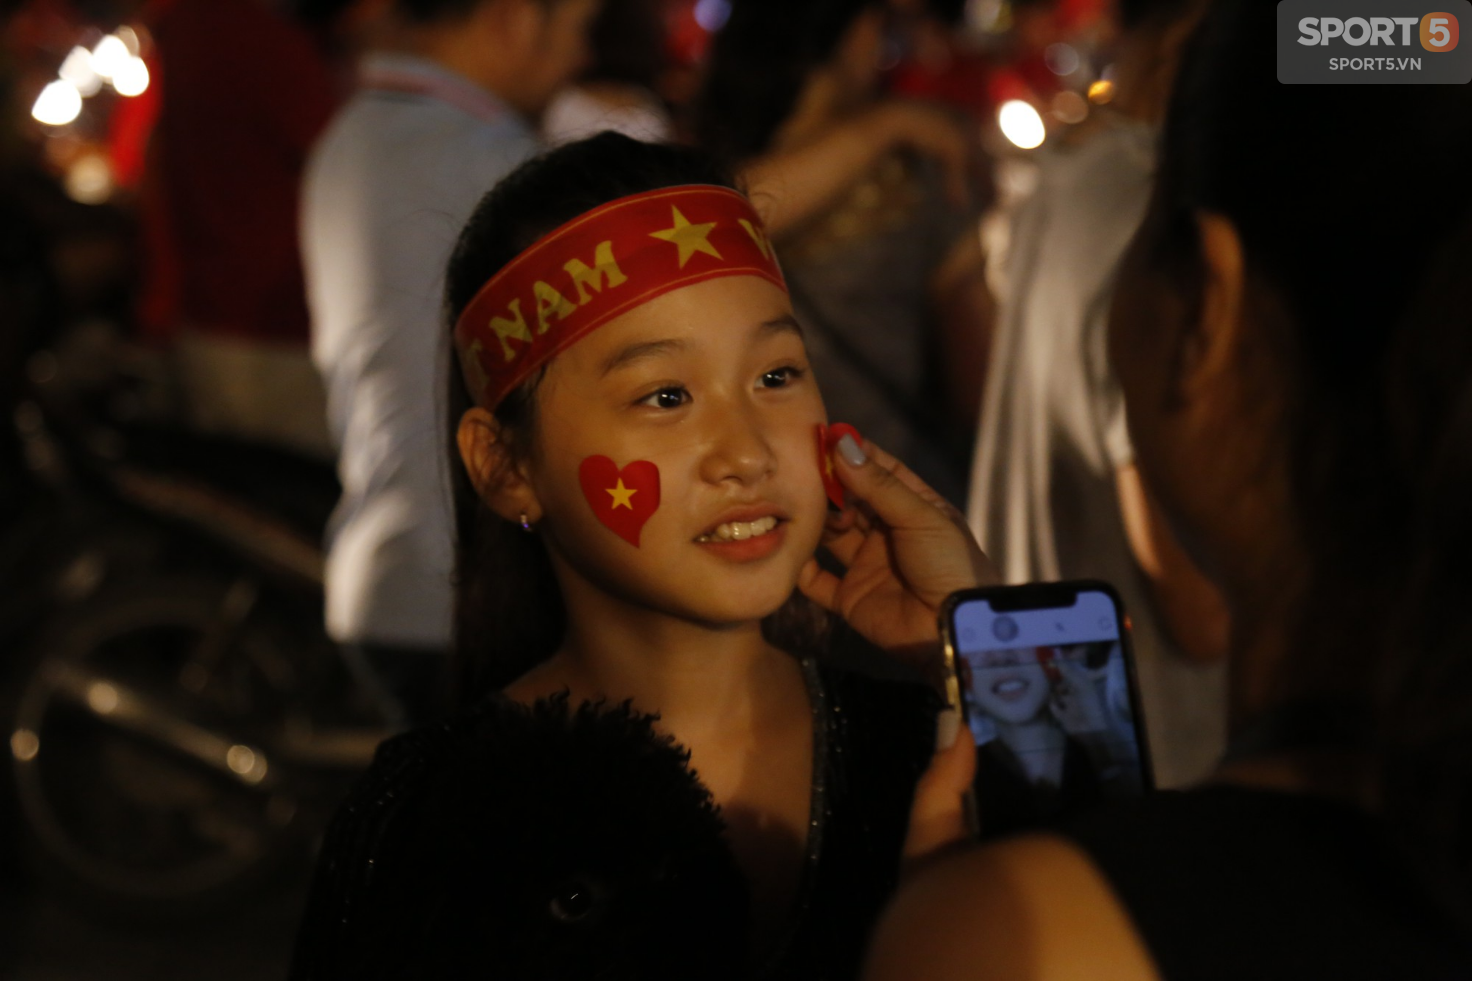 Từ Hàng Đẫy đến Bờ Hồ, cả Hà Nội chìm trong lửa đỏ ăn mừng chiến thắng của Olympic Việt Nam - Ảnh 23.